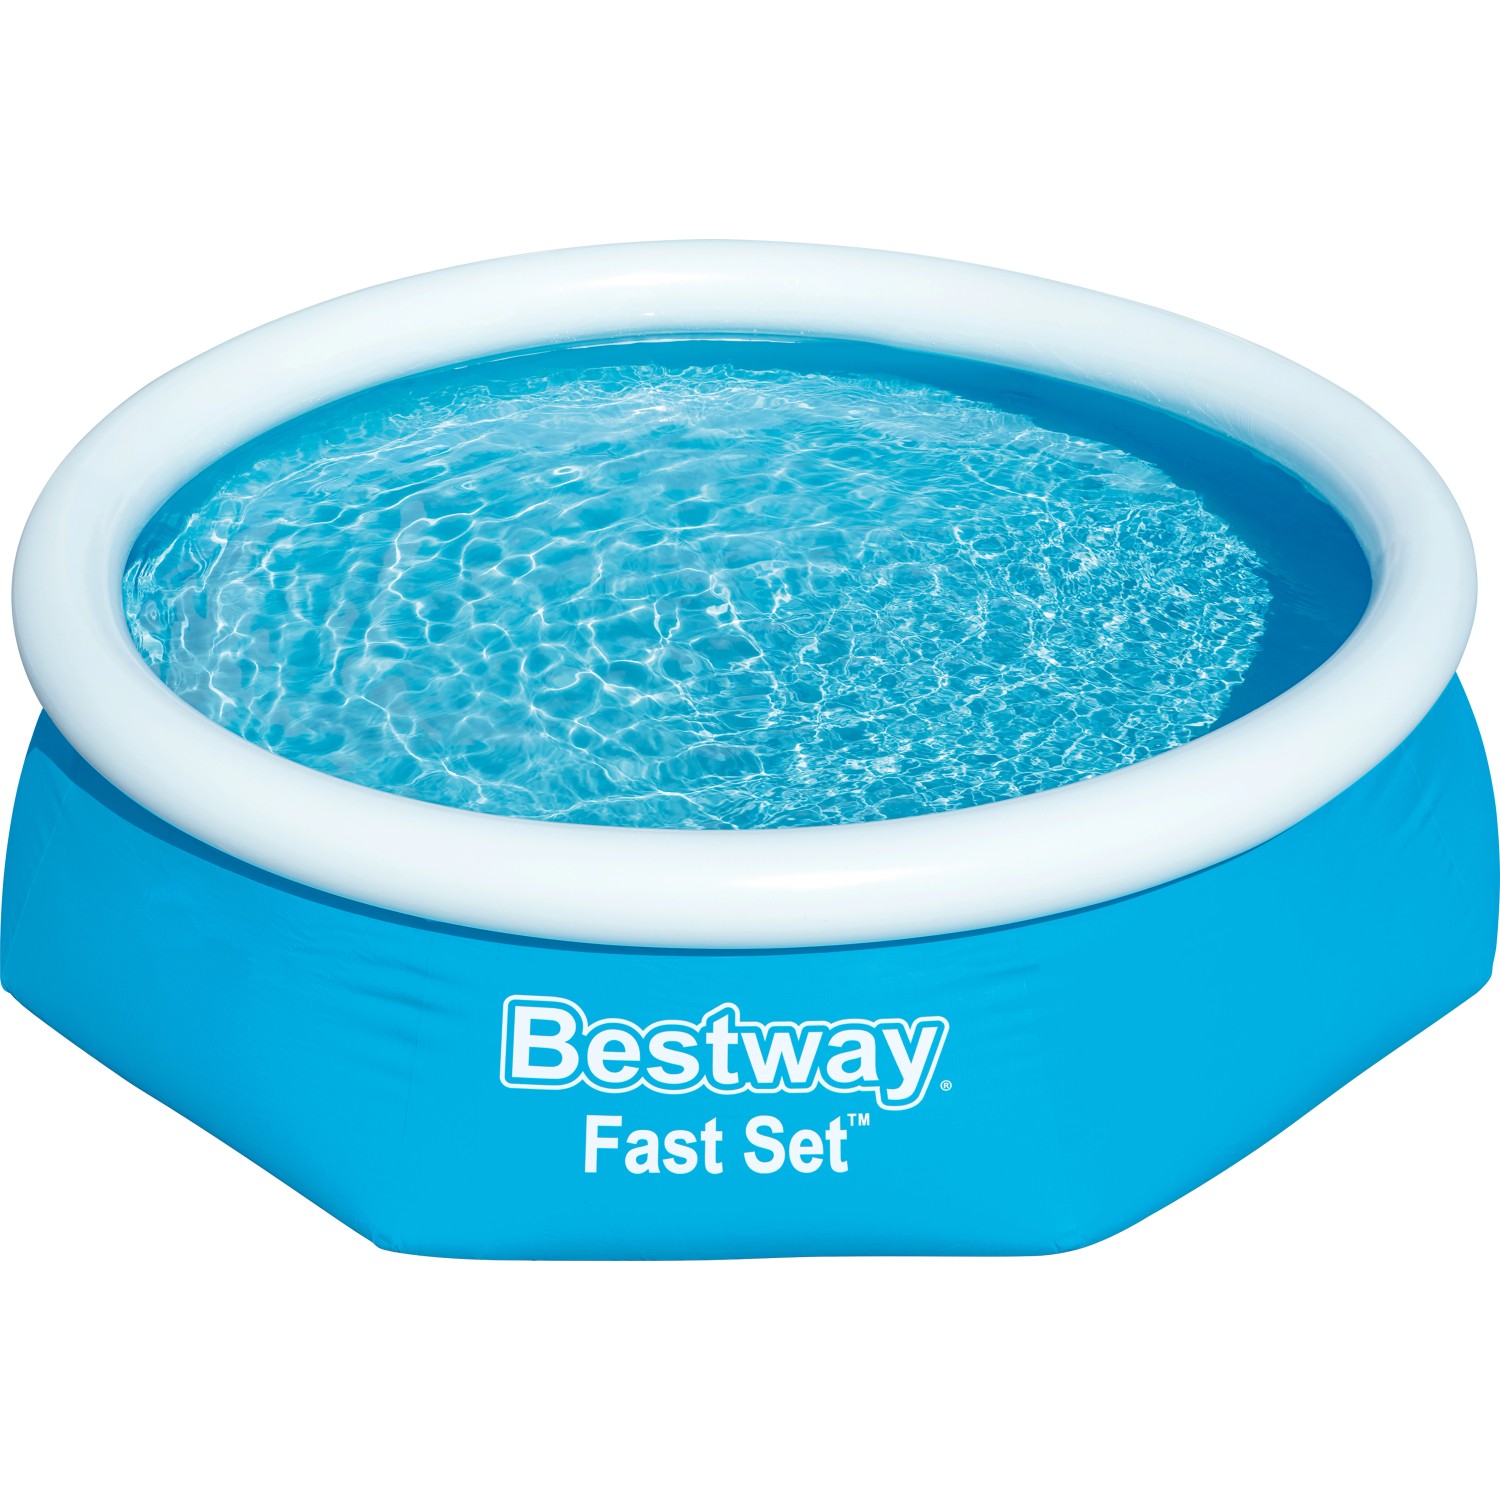 Bestway Fast Set Aufstellpool Ø 244 x 61 cm Rund Blau